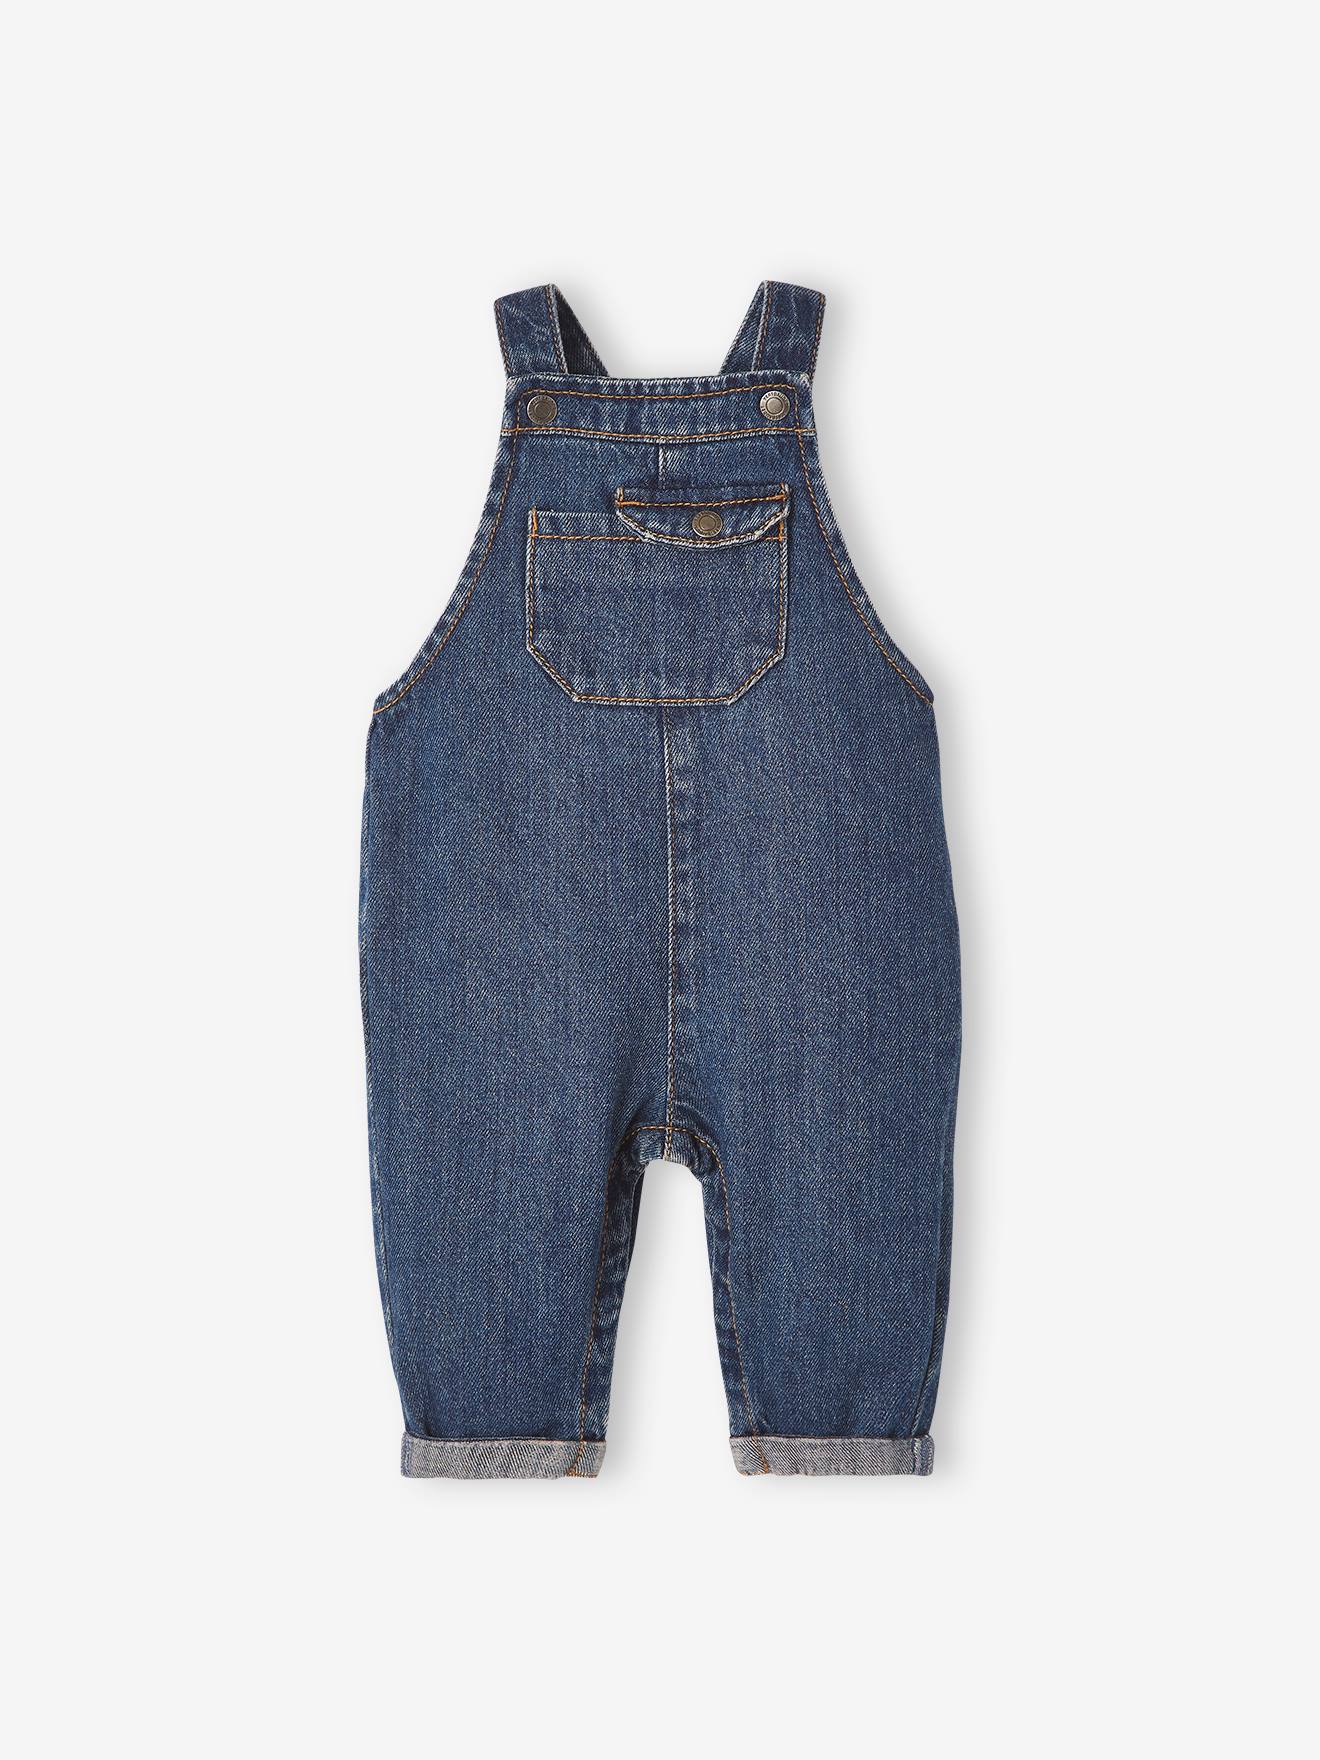 Mädchen Jungen Baumwolle Overall Jeans mit Knöpfen 1-5 Jahre Braun Baby Kinder Latzhose 